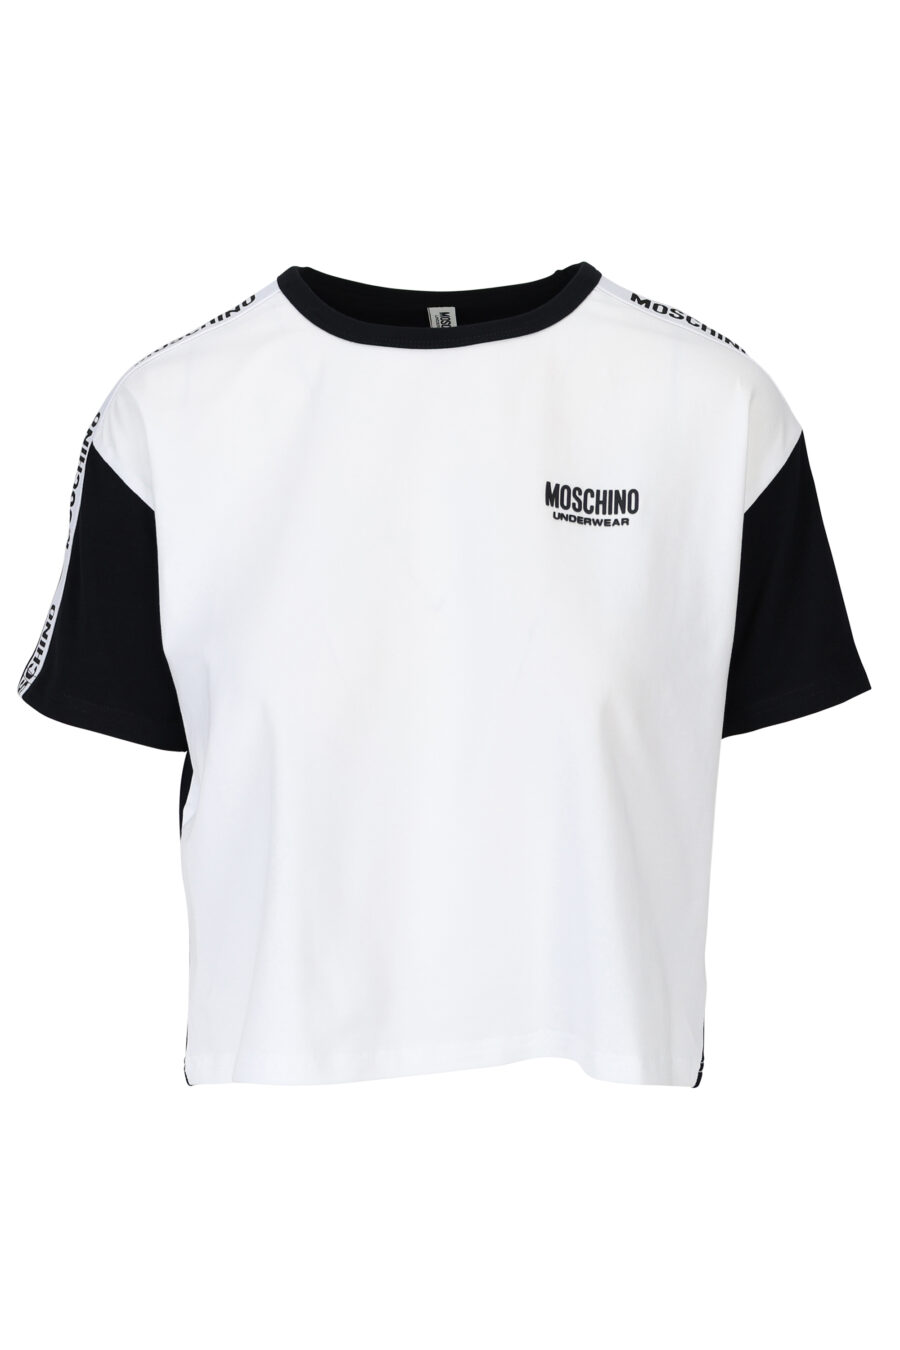 Moschino - Camiseta blanca de mangas y espalda negra y logo en cinta - BLS  Fashion